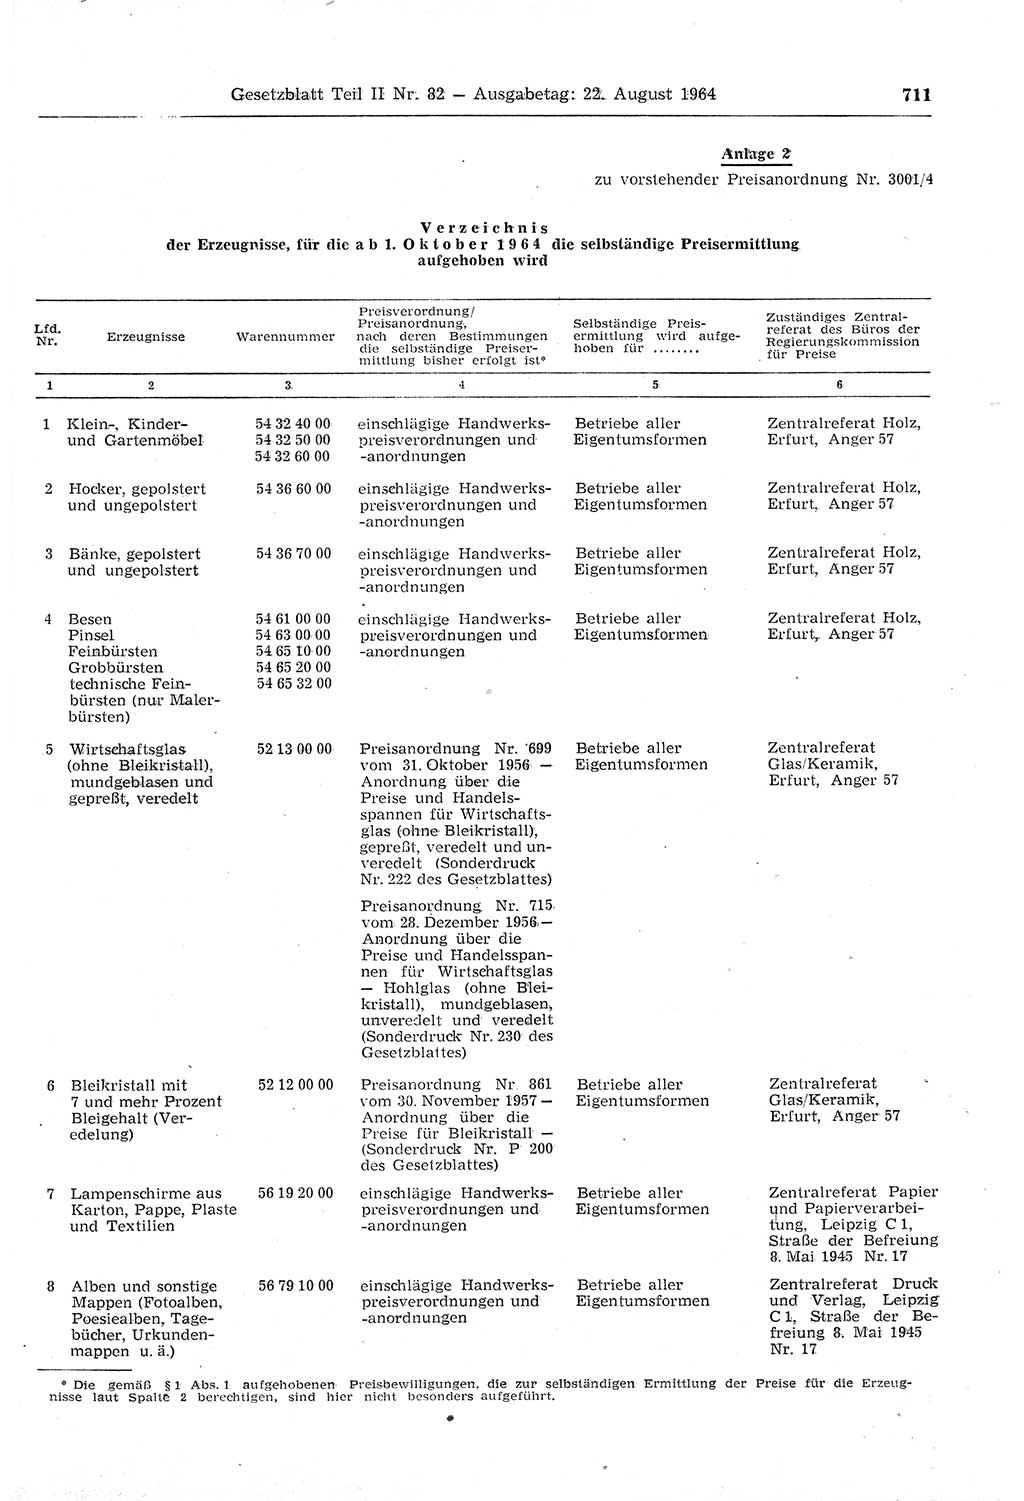 Gesetzblatt (GBl.) der Deutschen Demokratischen Republik (DDR) Teil ⅠⅠ 1964, Seite 711 (GBl. DDR ⅠⅠ 1964, S. 711)